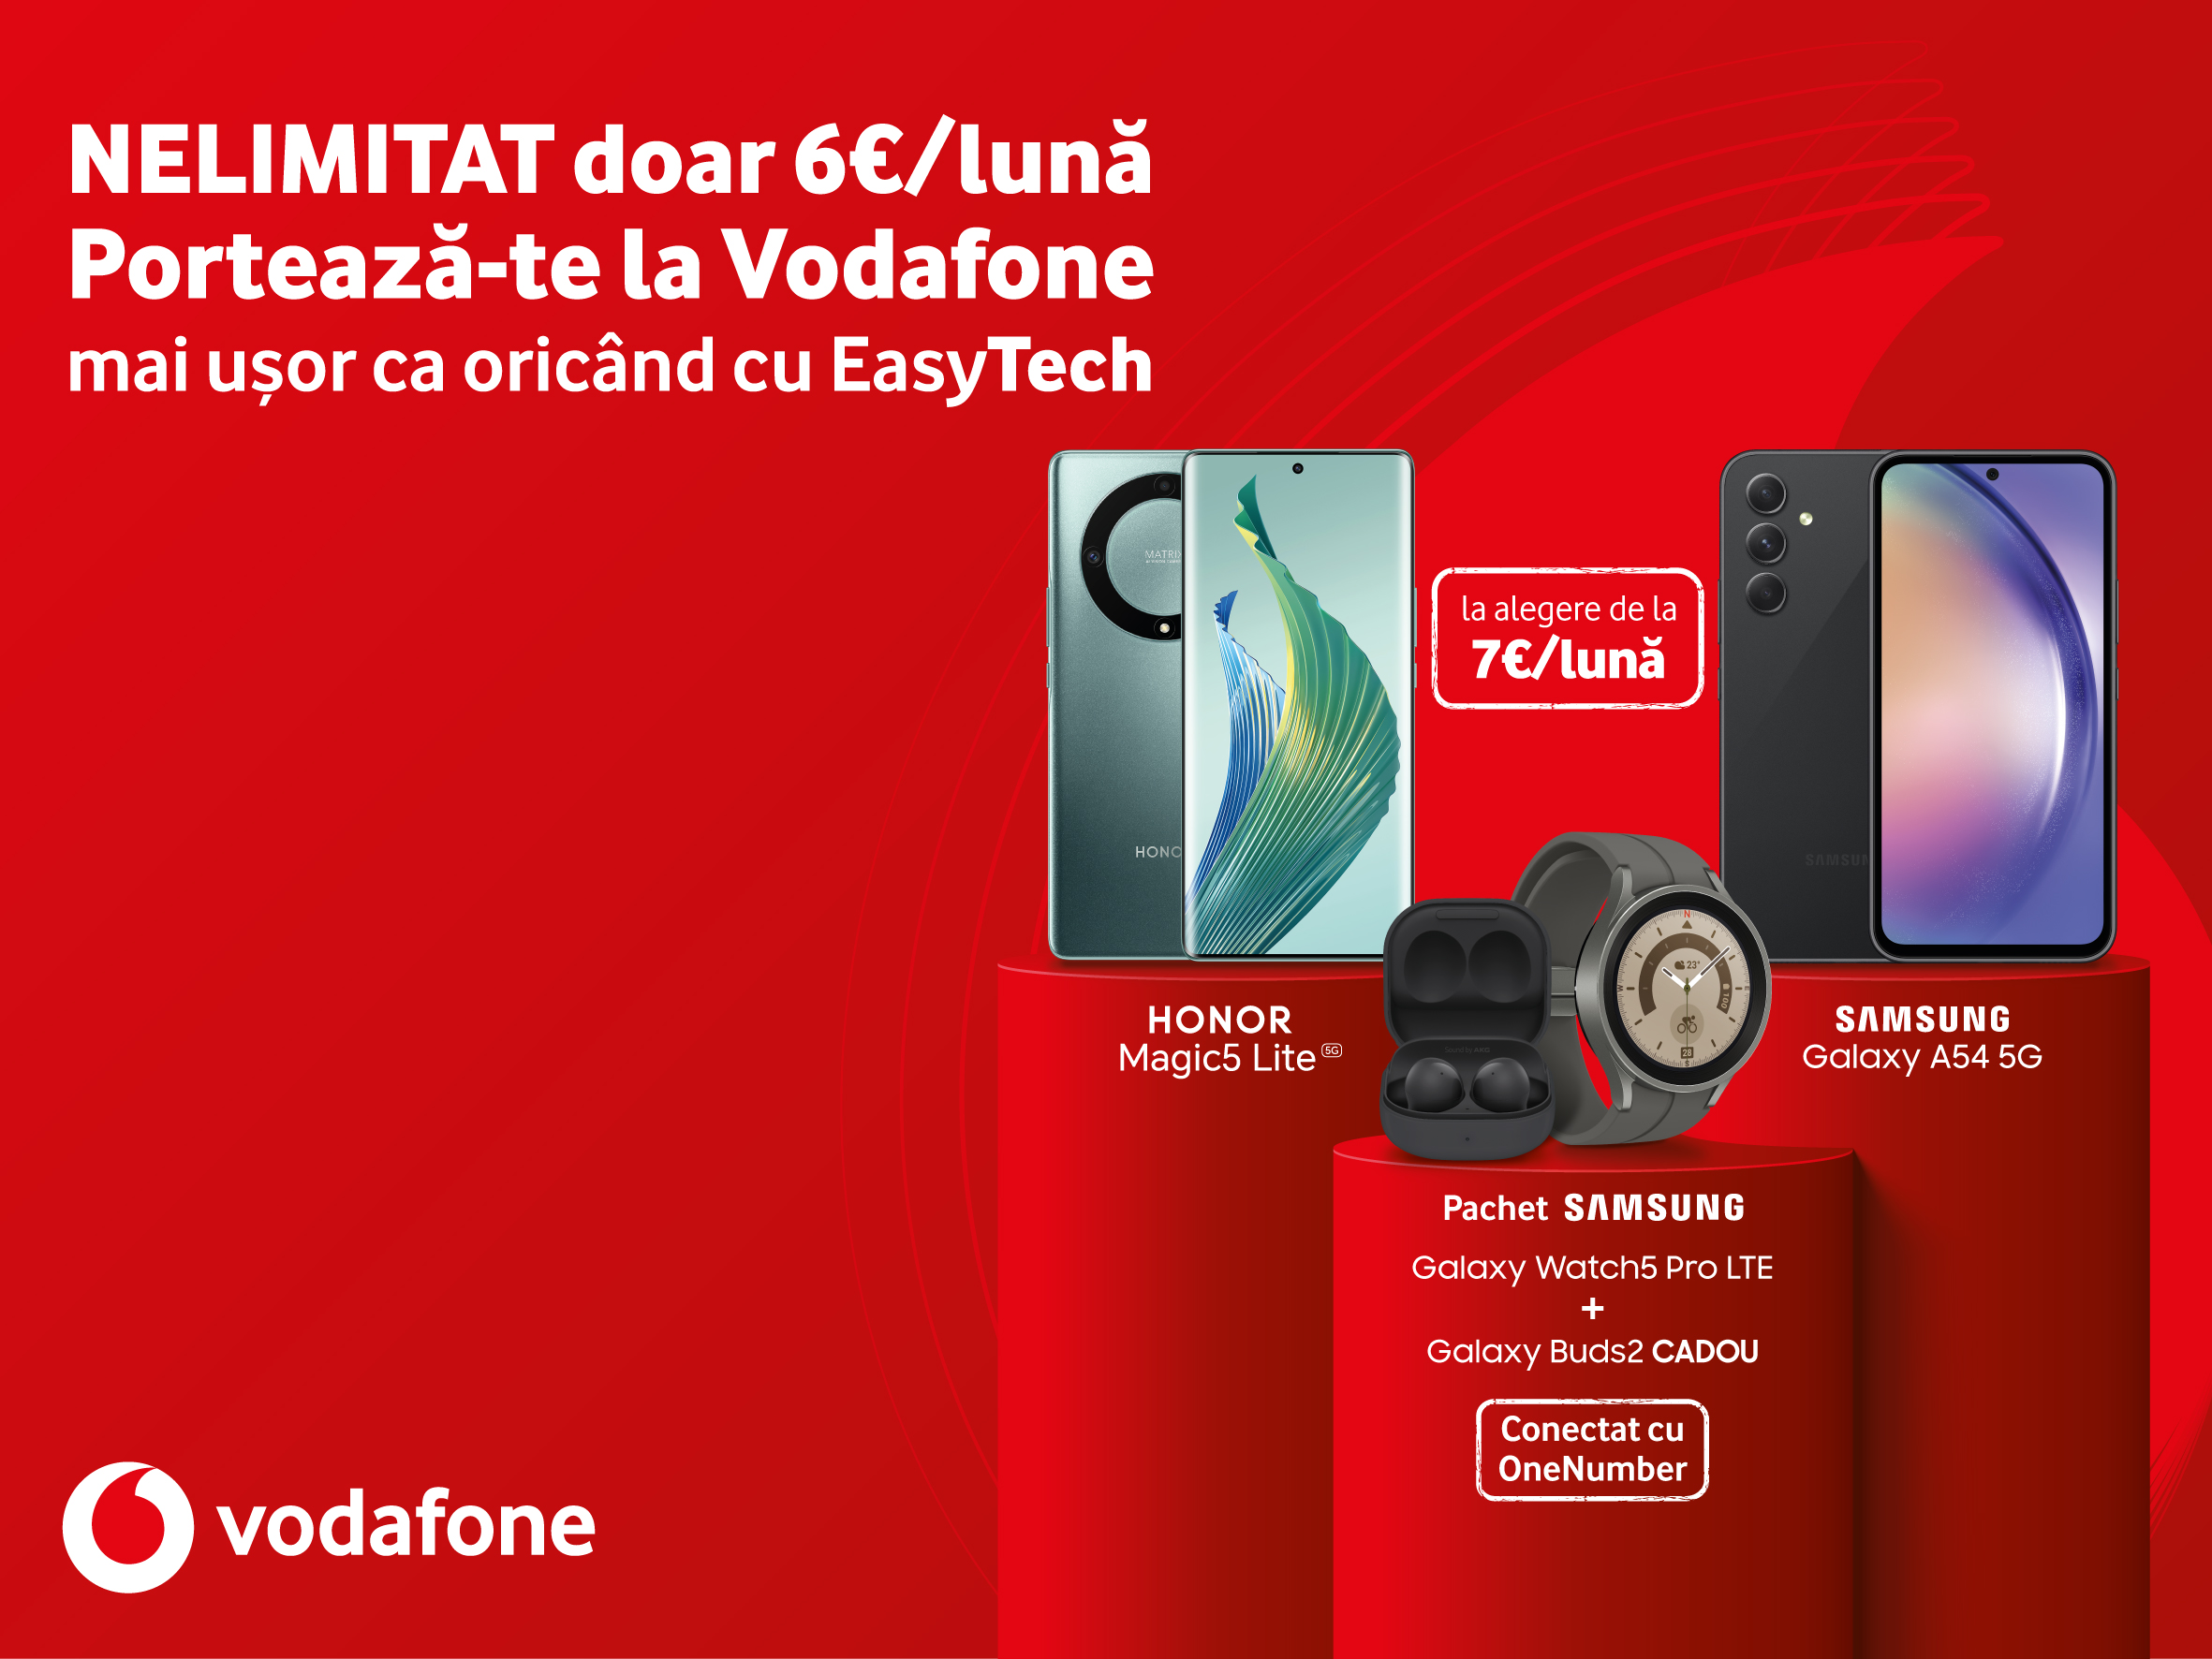 Portare EasyTech la Vodafone: nelimitat pe mobil cu 6 euro/lună și gadgeturi cu super reduceri, în 36 de rate, fără dobândă